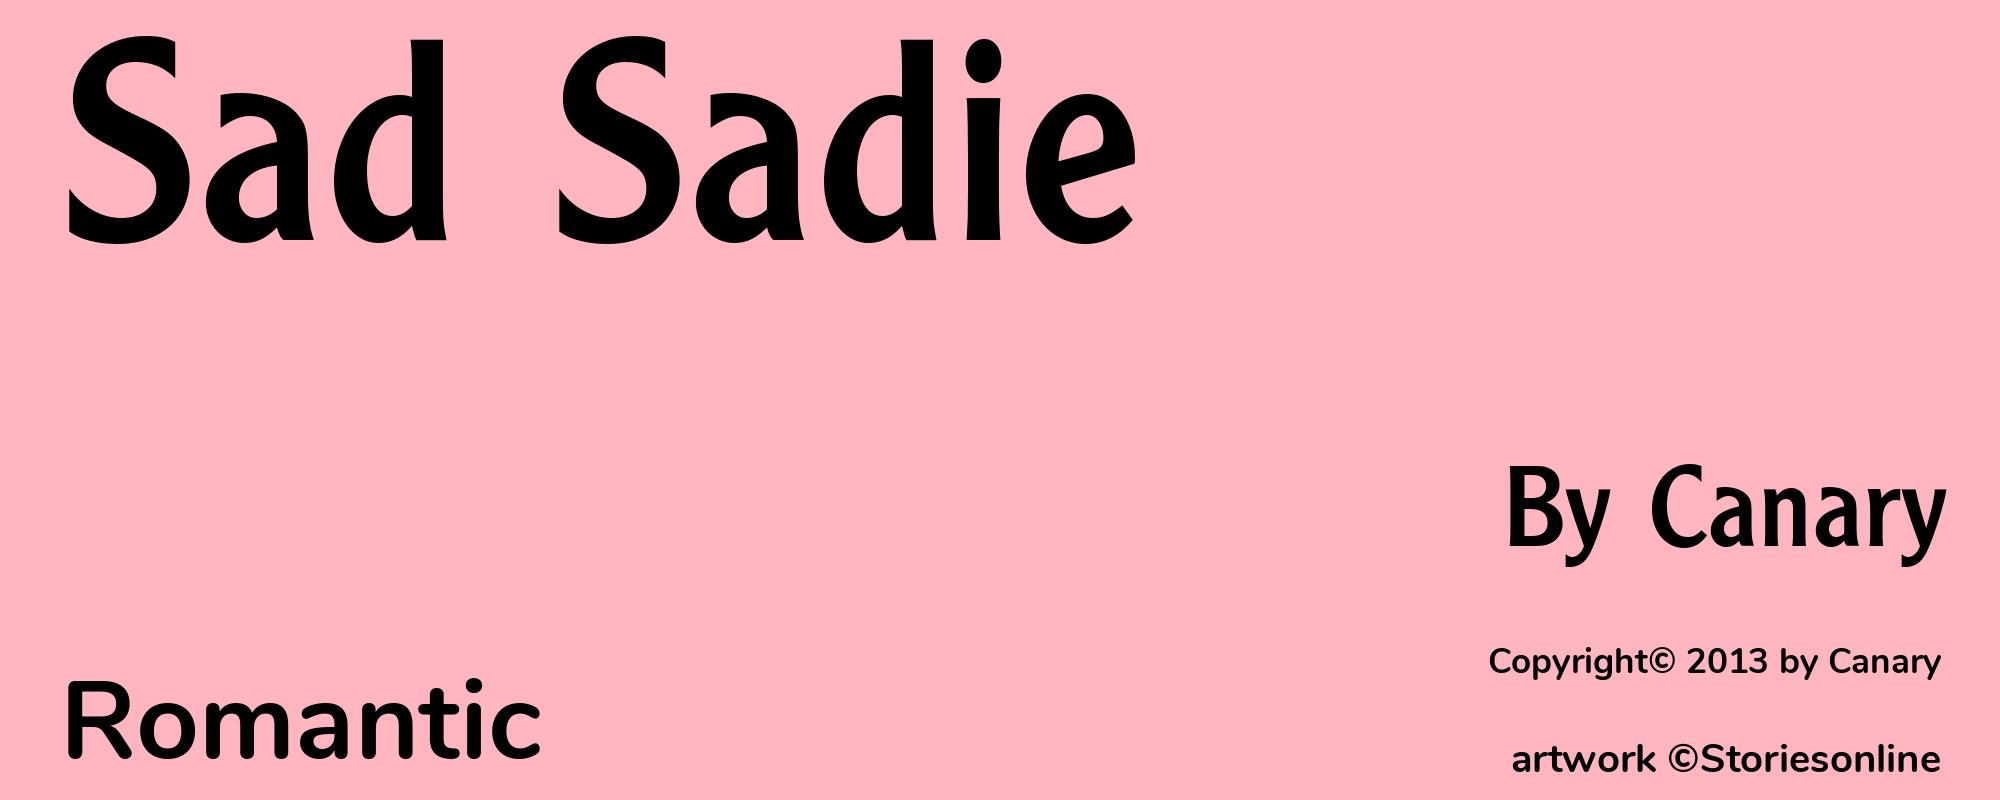 Sad Sadie - Cover